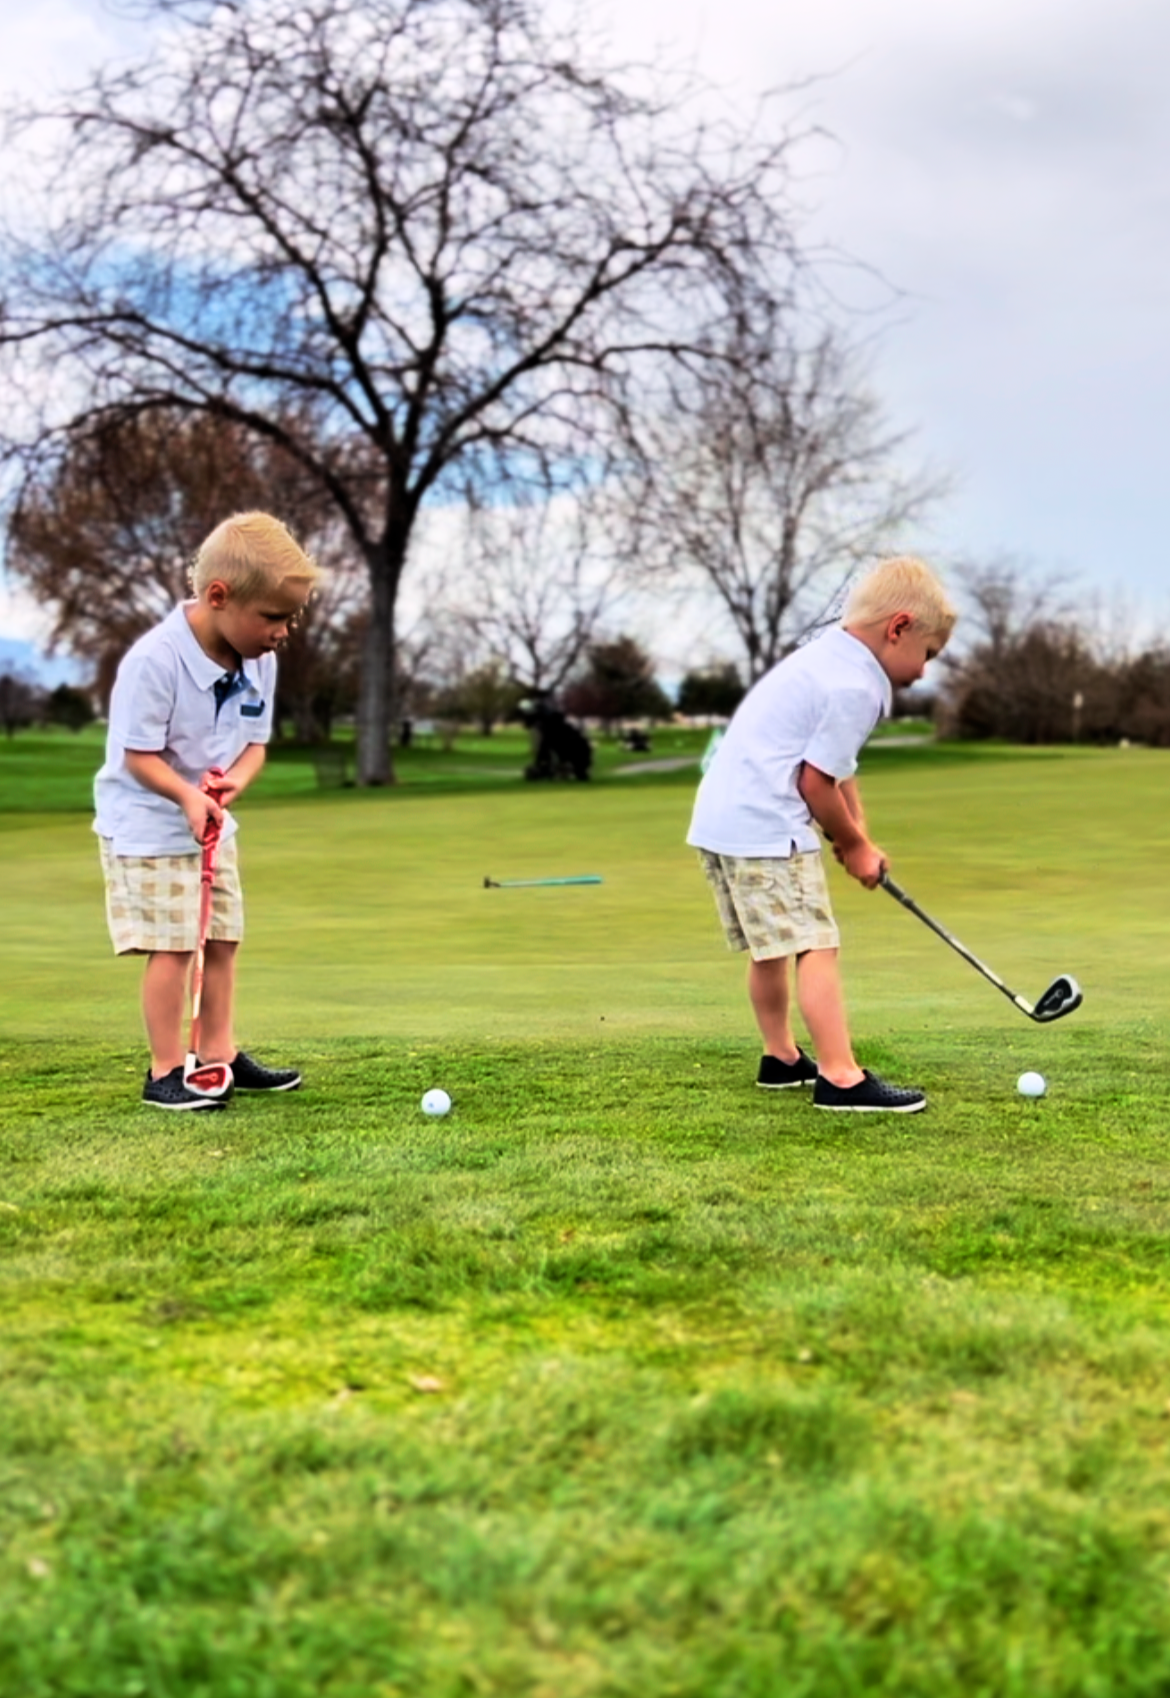 Kids golf swing